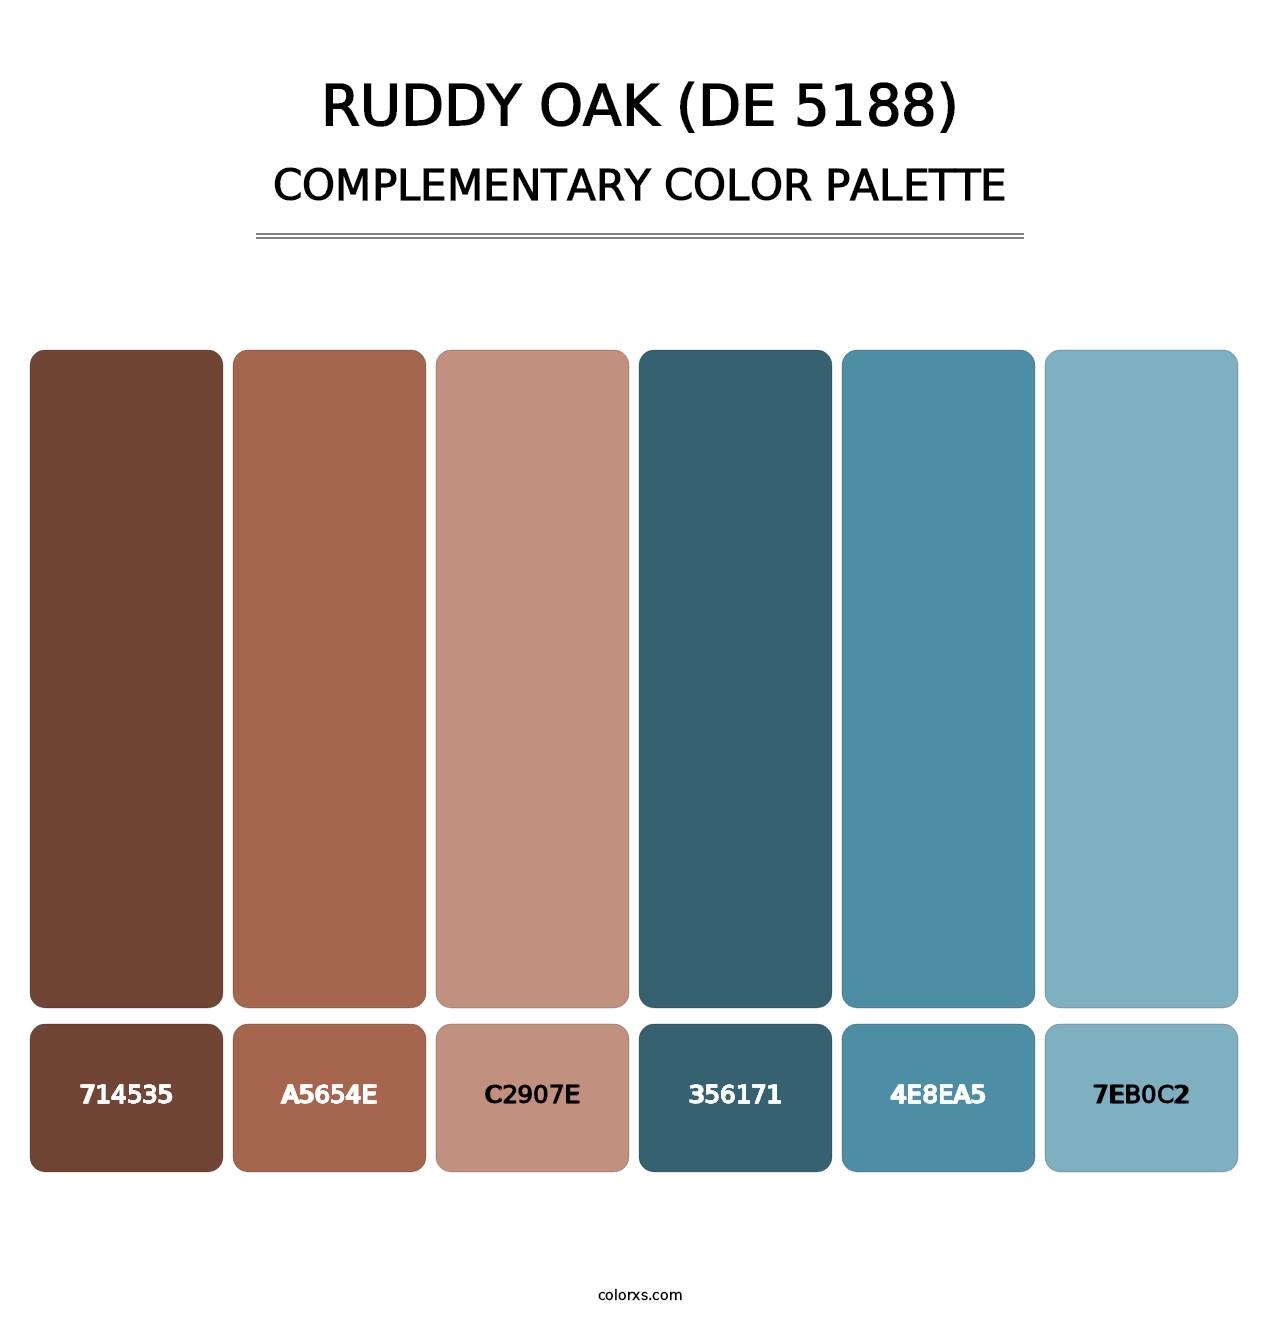 Ruddy Oak (DE 5188) - Complementary Color Palette